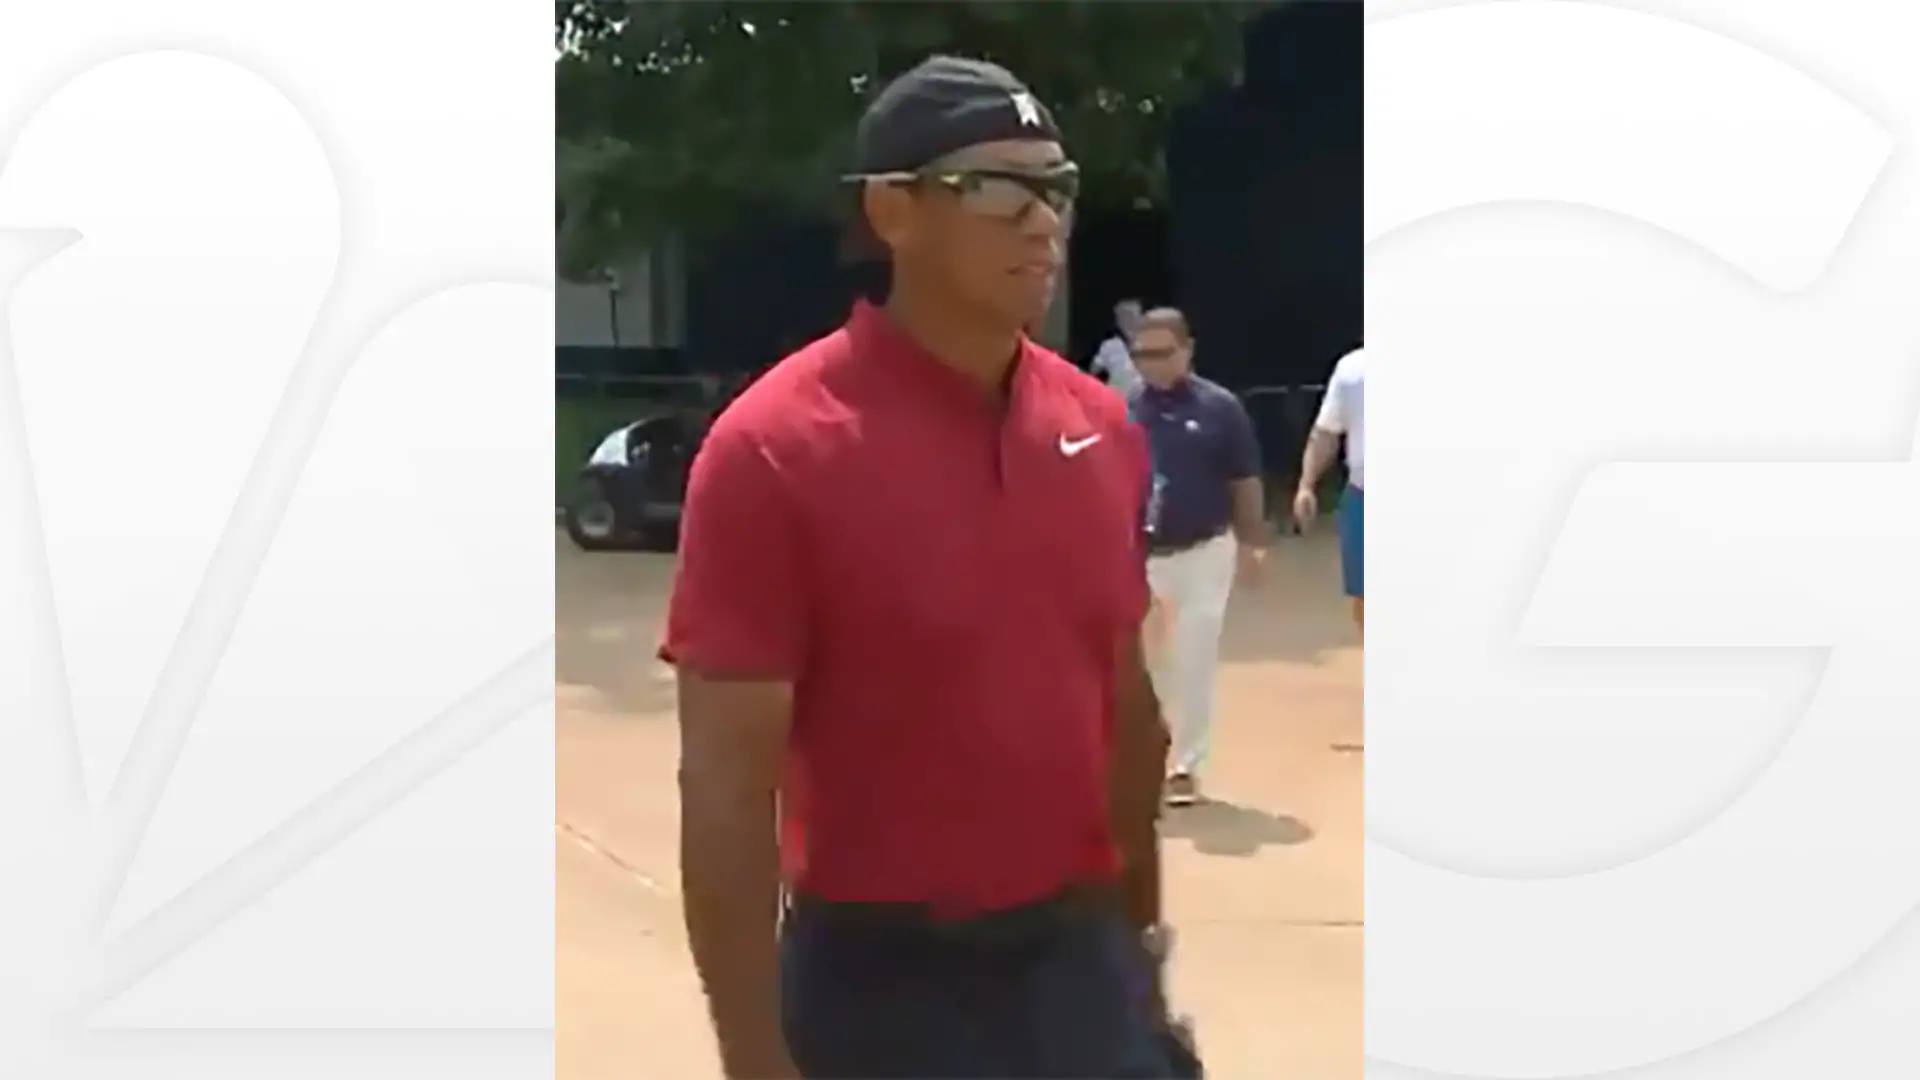 Shades, backwards hat, Tiger goes #bossmode at PGA